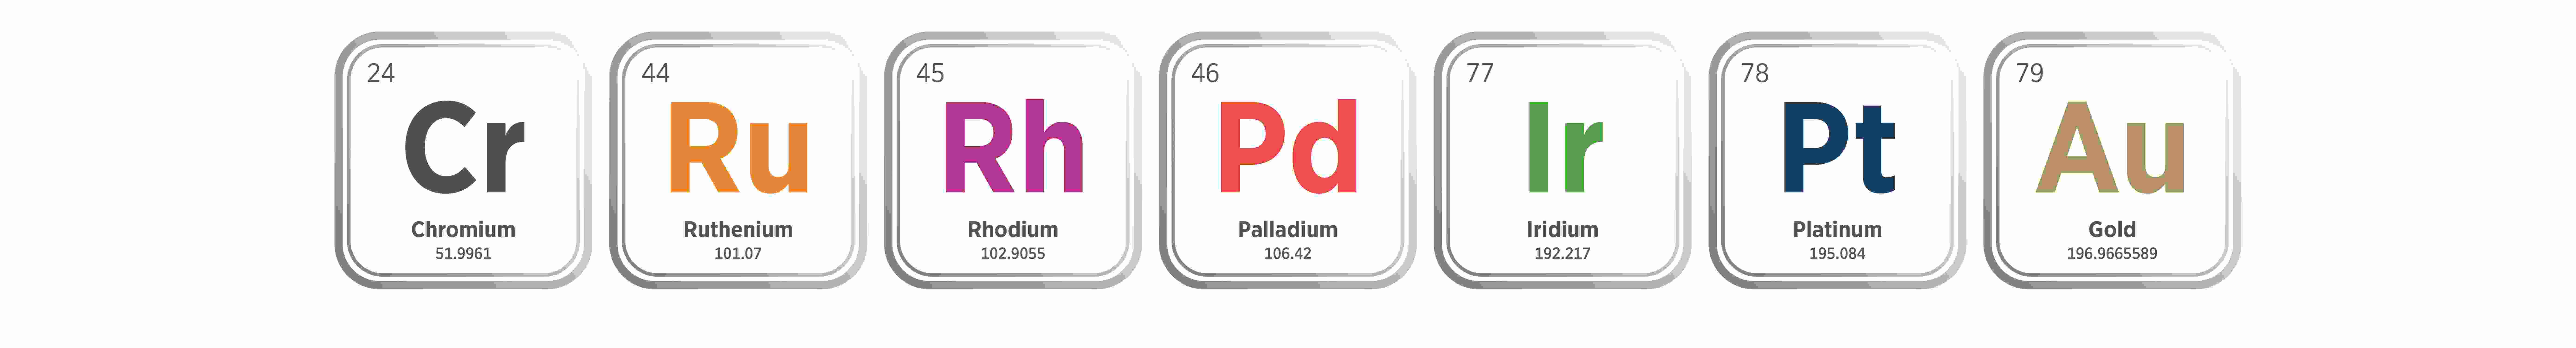 Chrome, Ruthenium, Rhodium, Palladium, Iridium, Platinum, Gold